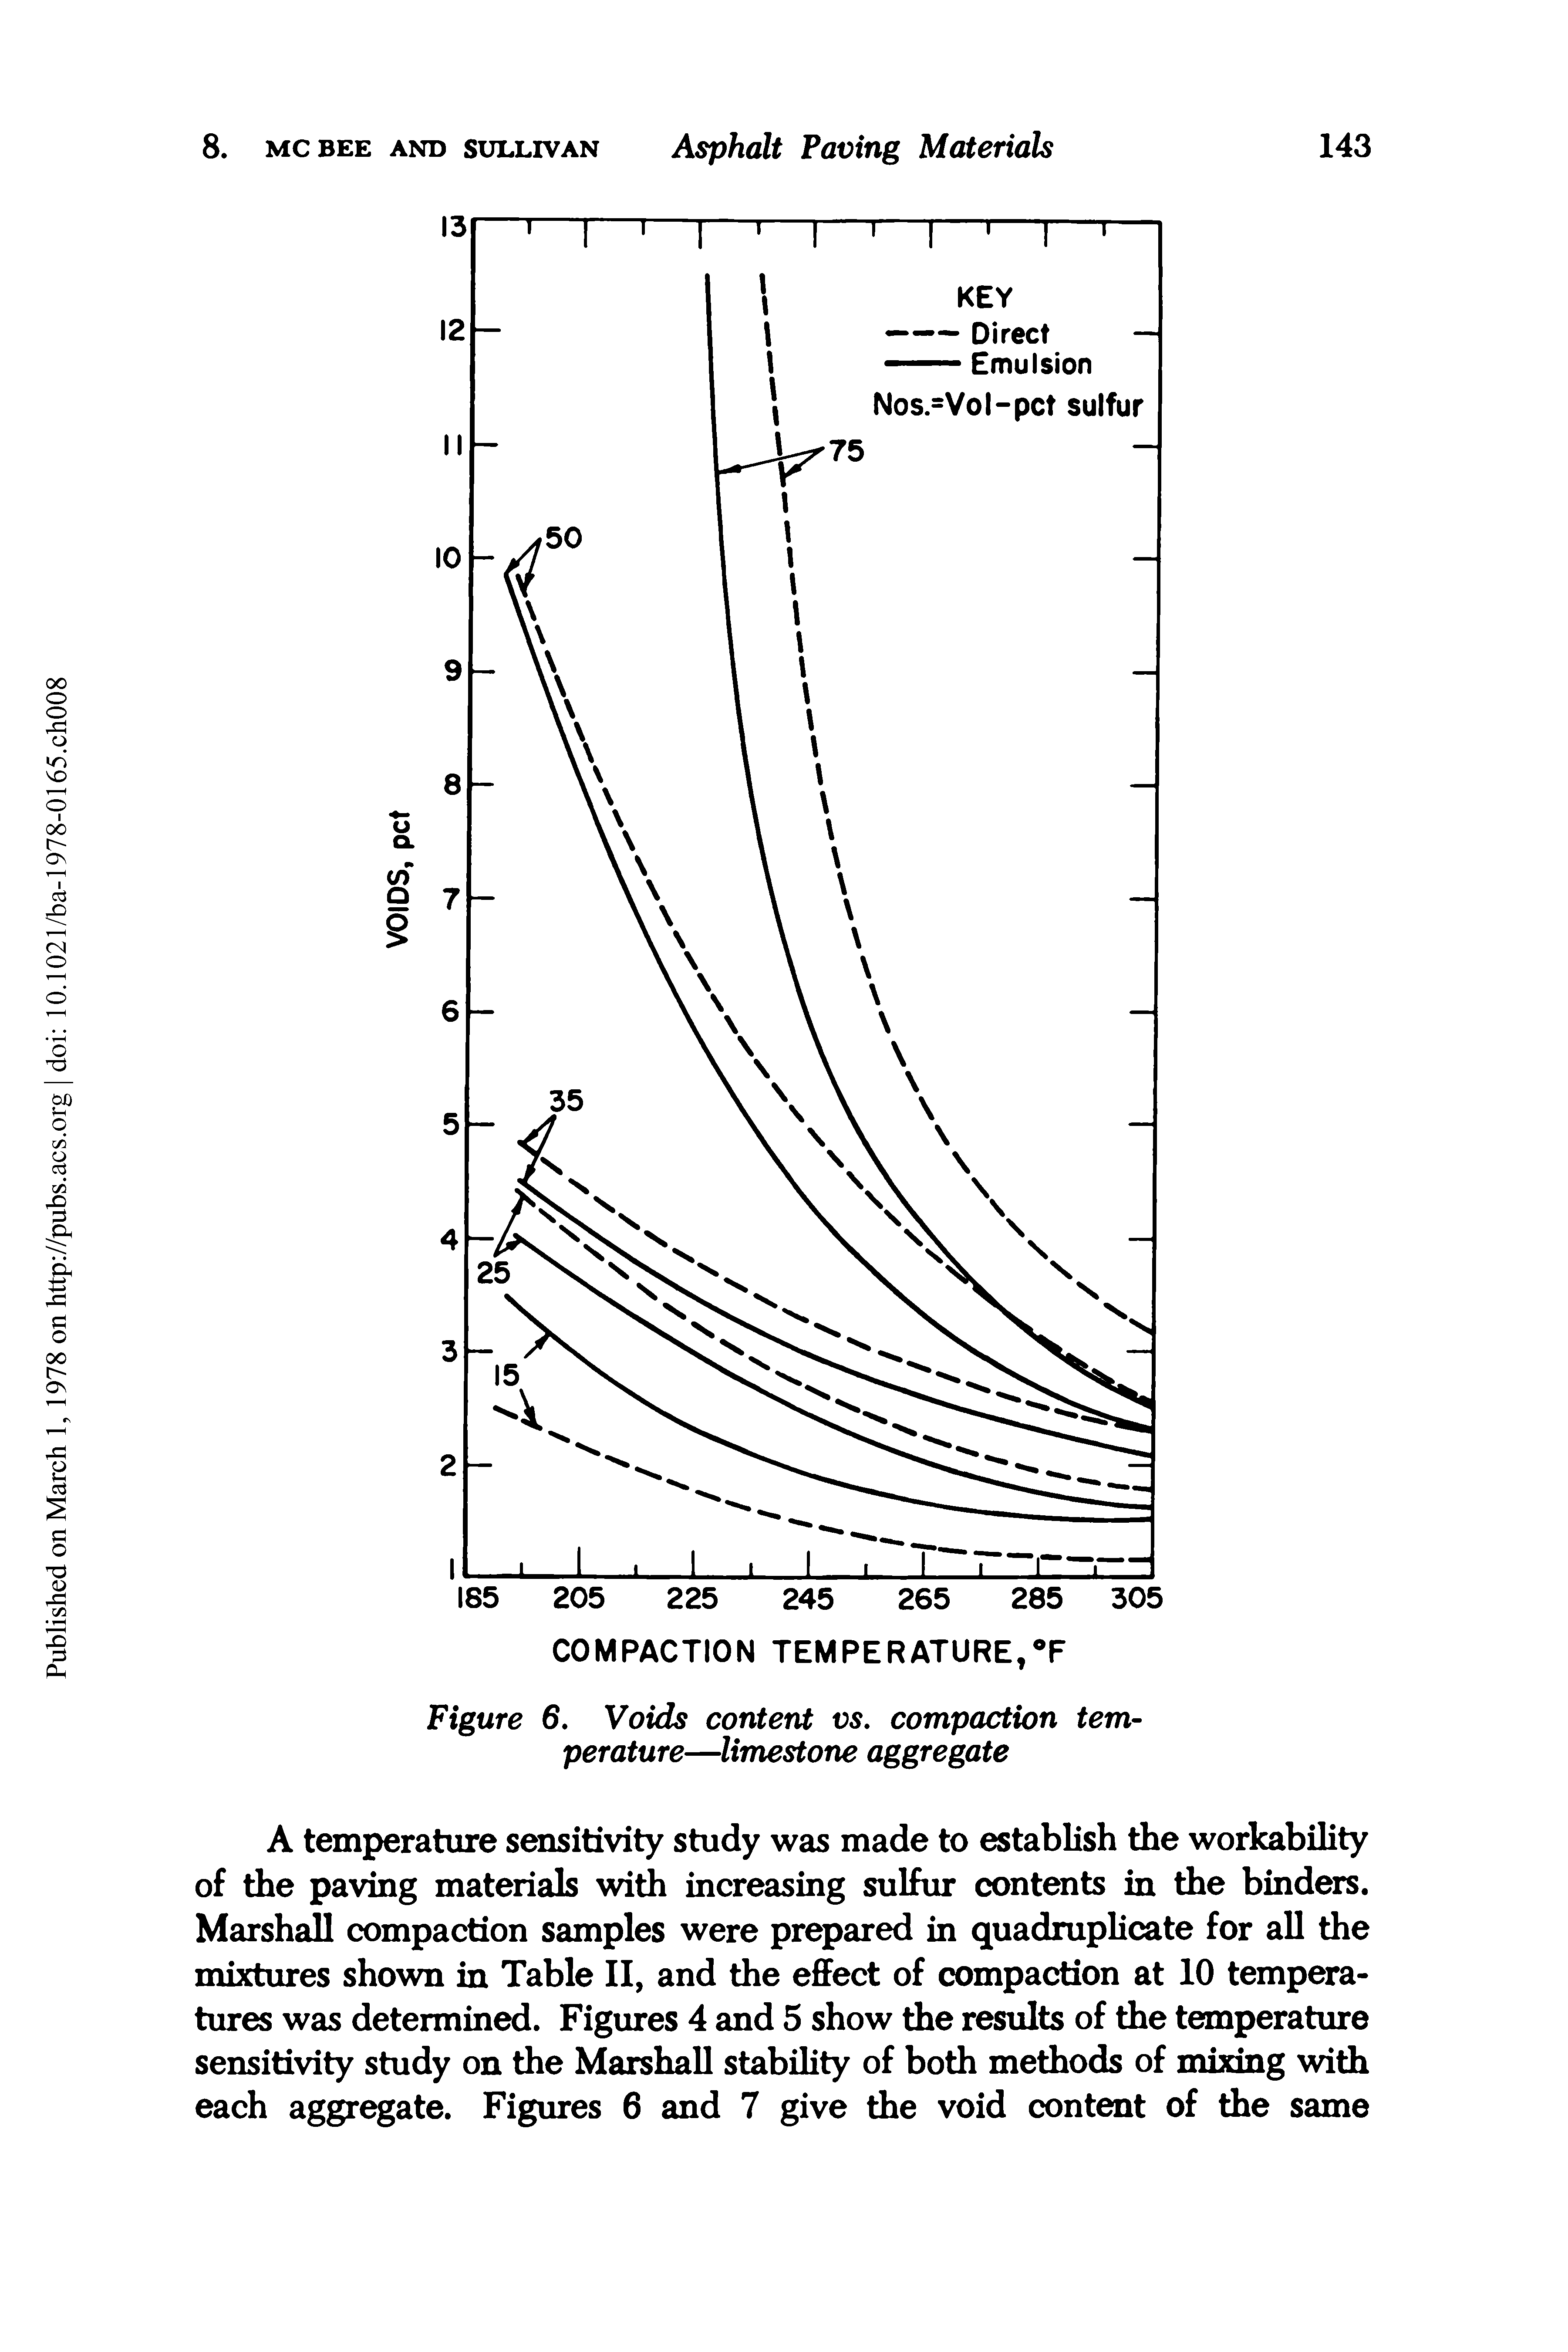 Figure 6. Voids content vs. compaction temperature—limestone aggregate...